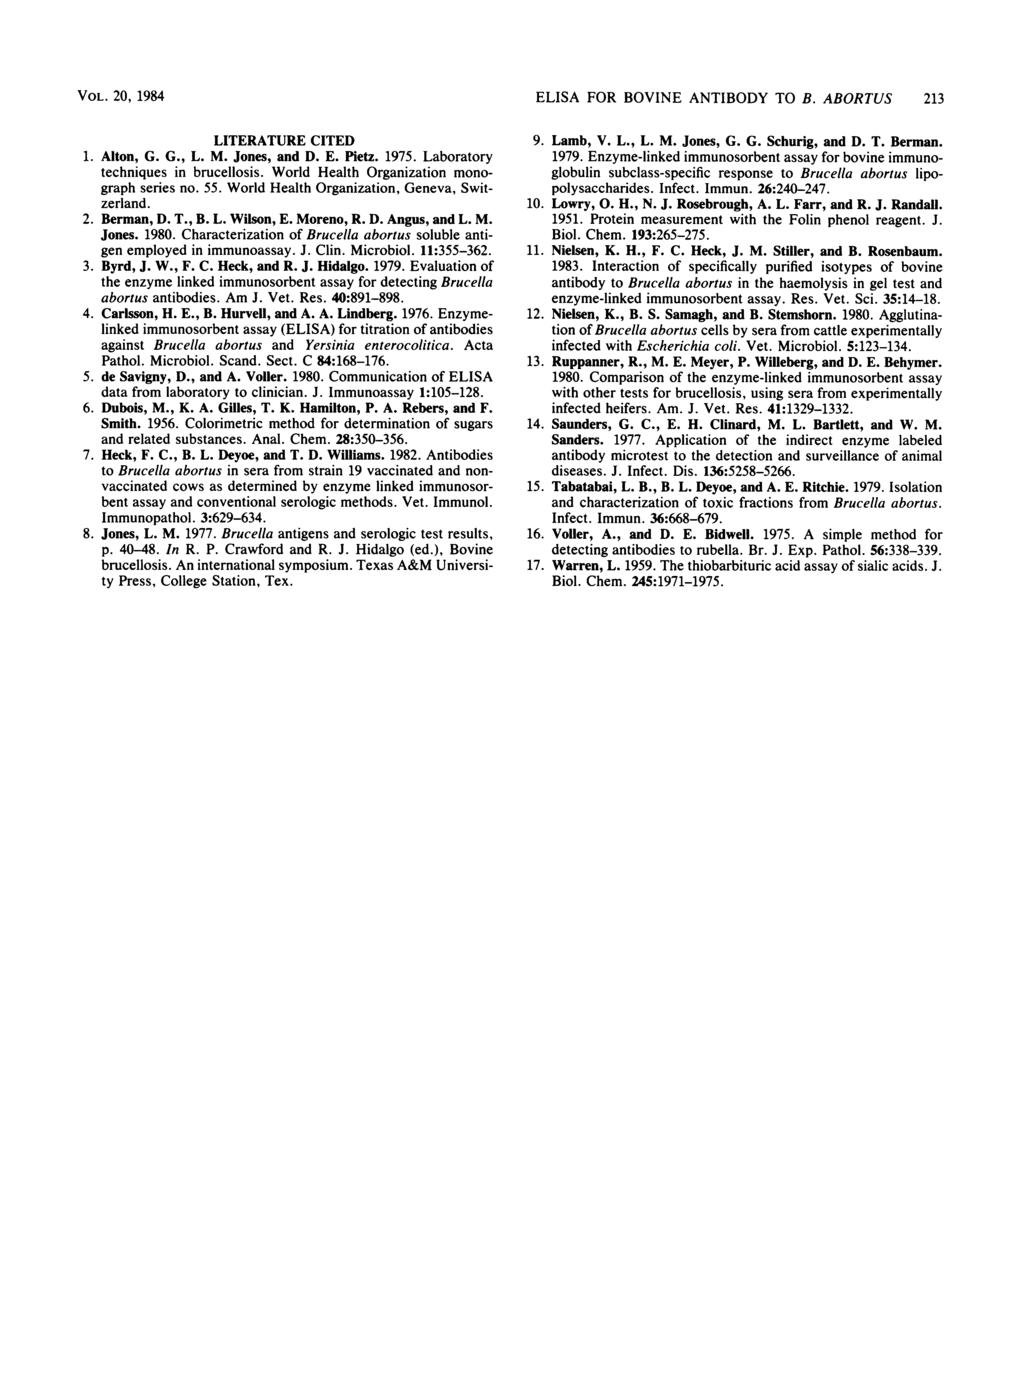 VOL. 20, 1984 LITERATURE CITED 1. Alton, G. G., L. M. Jones, and D. E. Pietz. 1975. Laboratory techniques in brucellosis. World Health Organization monograph series no. 55.